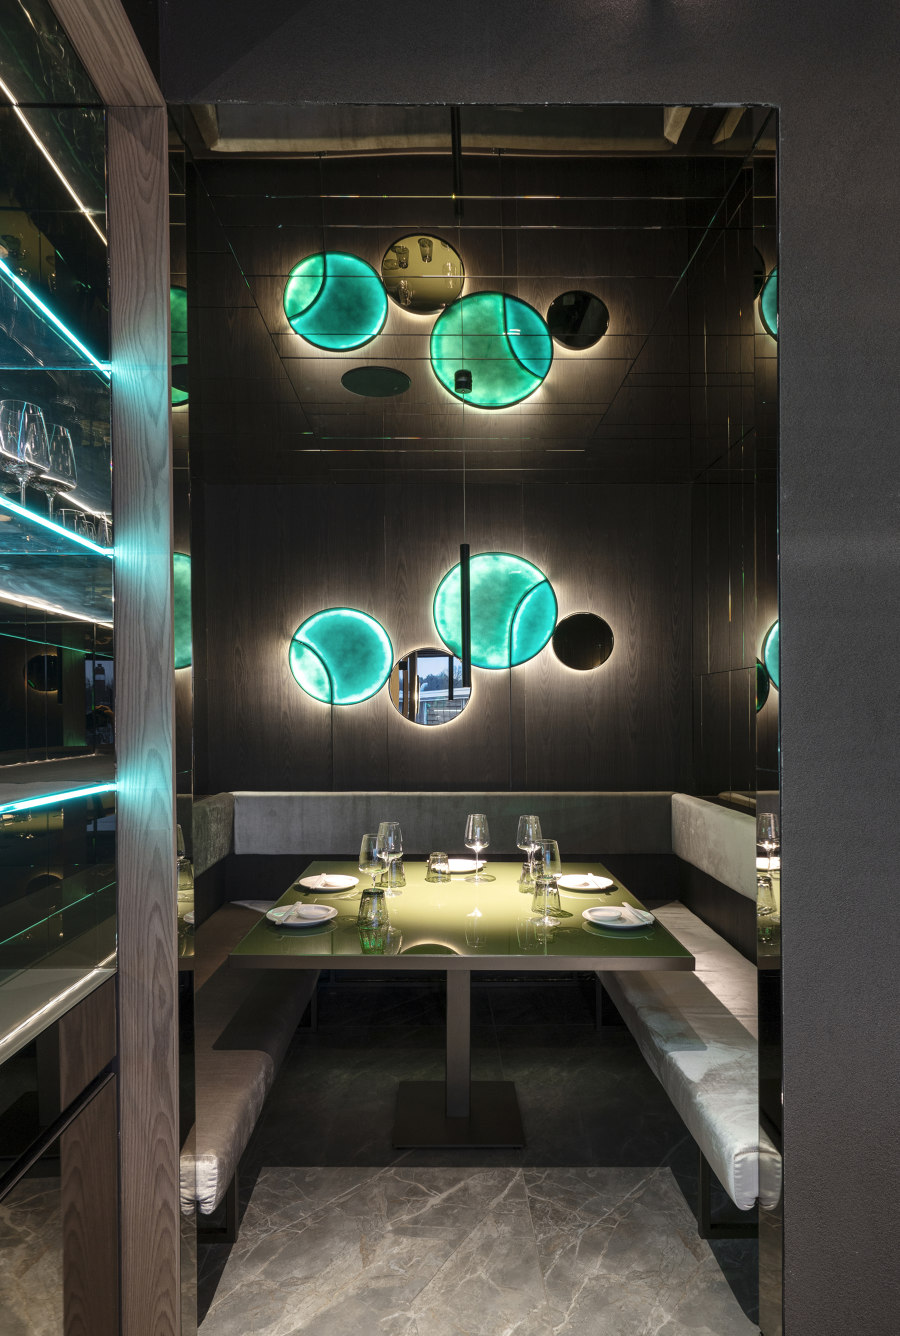 Moya de LAI STUDIO, Maurizio Lai | Diseño de restaurantes